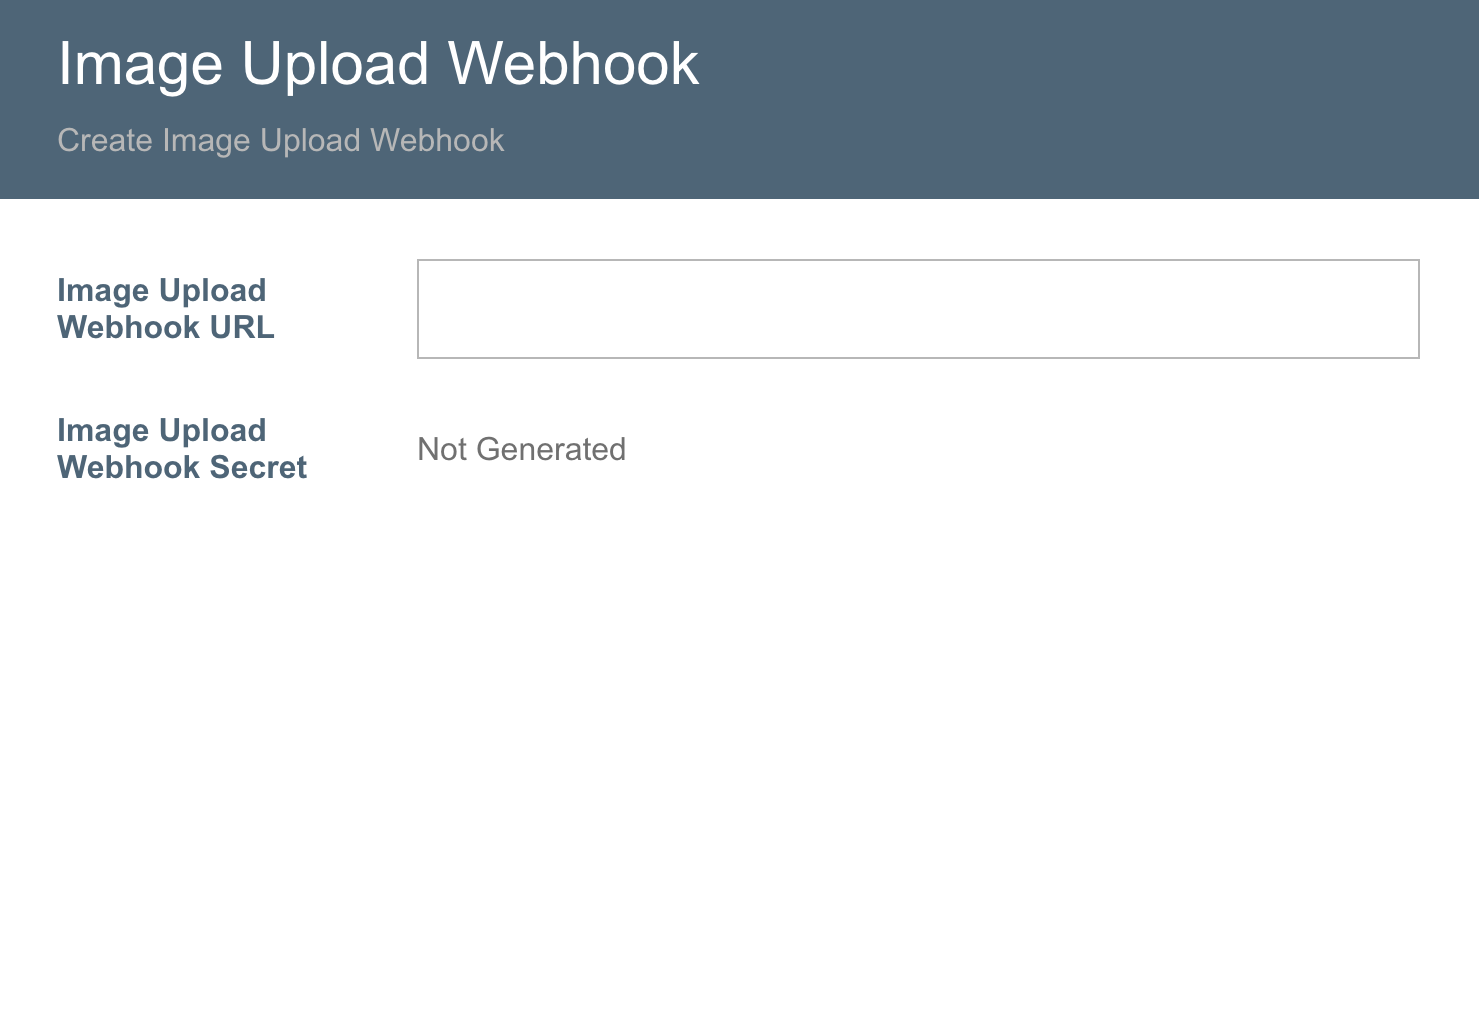 Create Image Upload Webhook